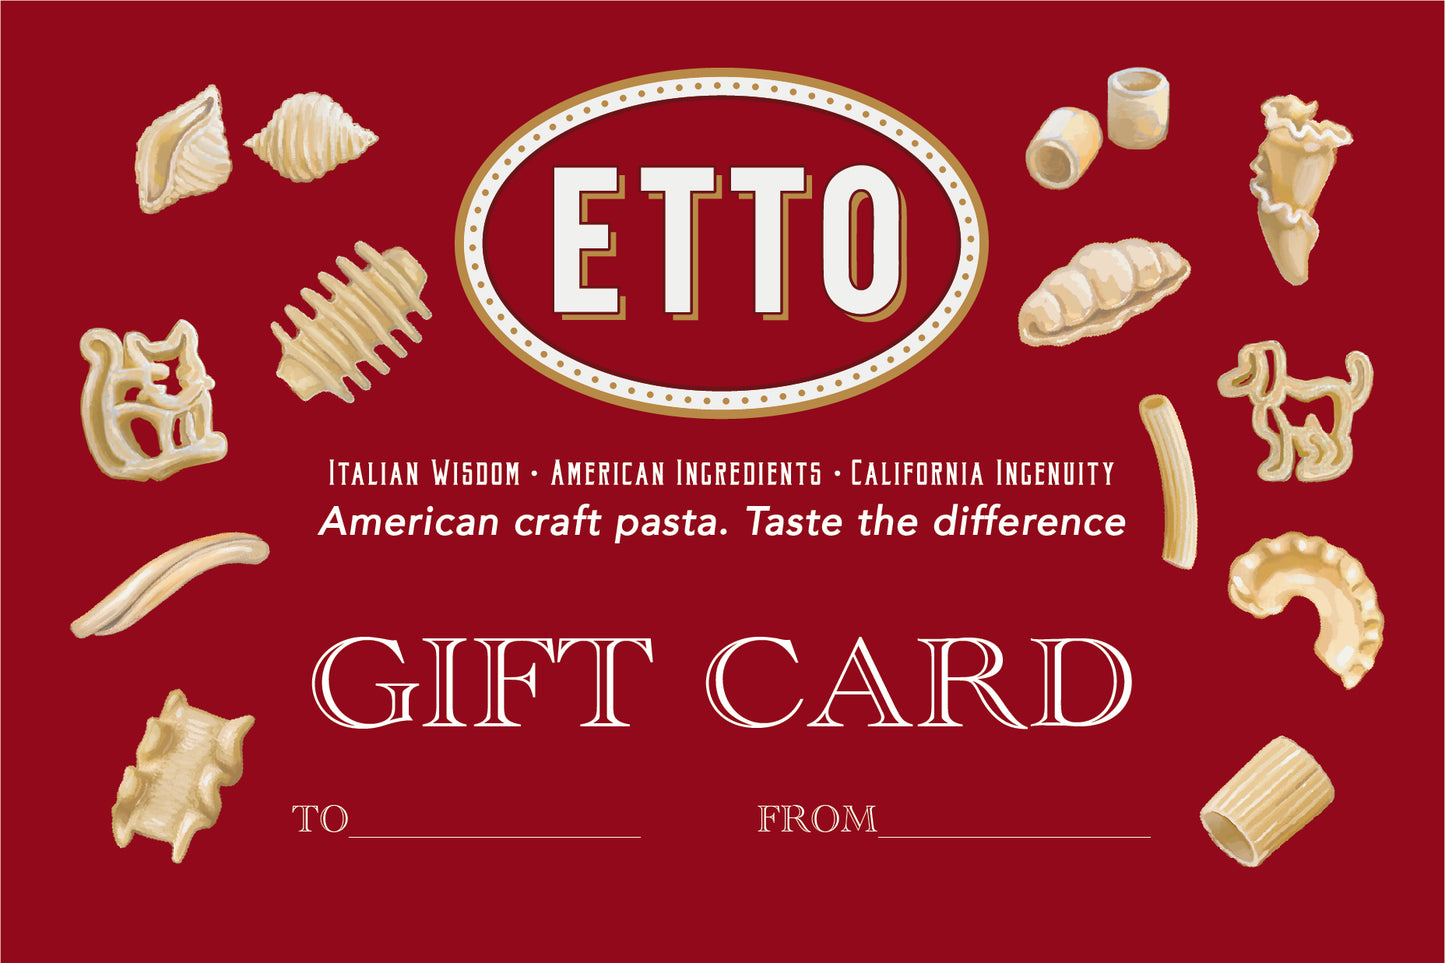 Etto Pasta Gift Card